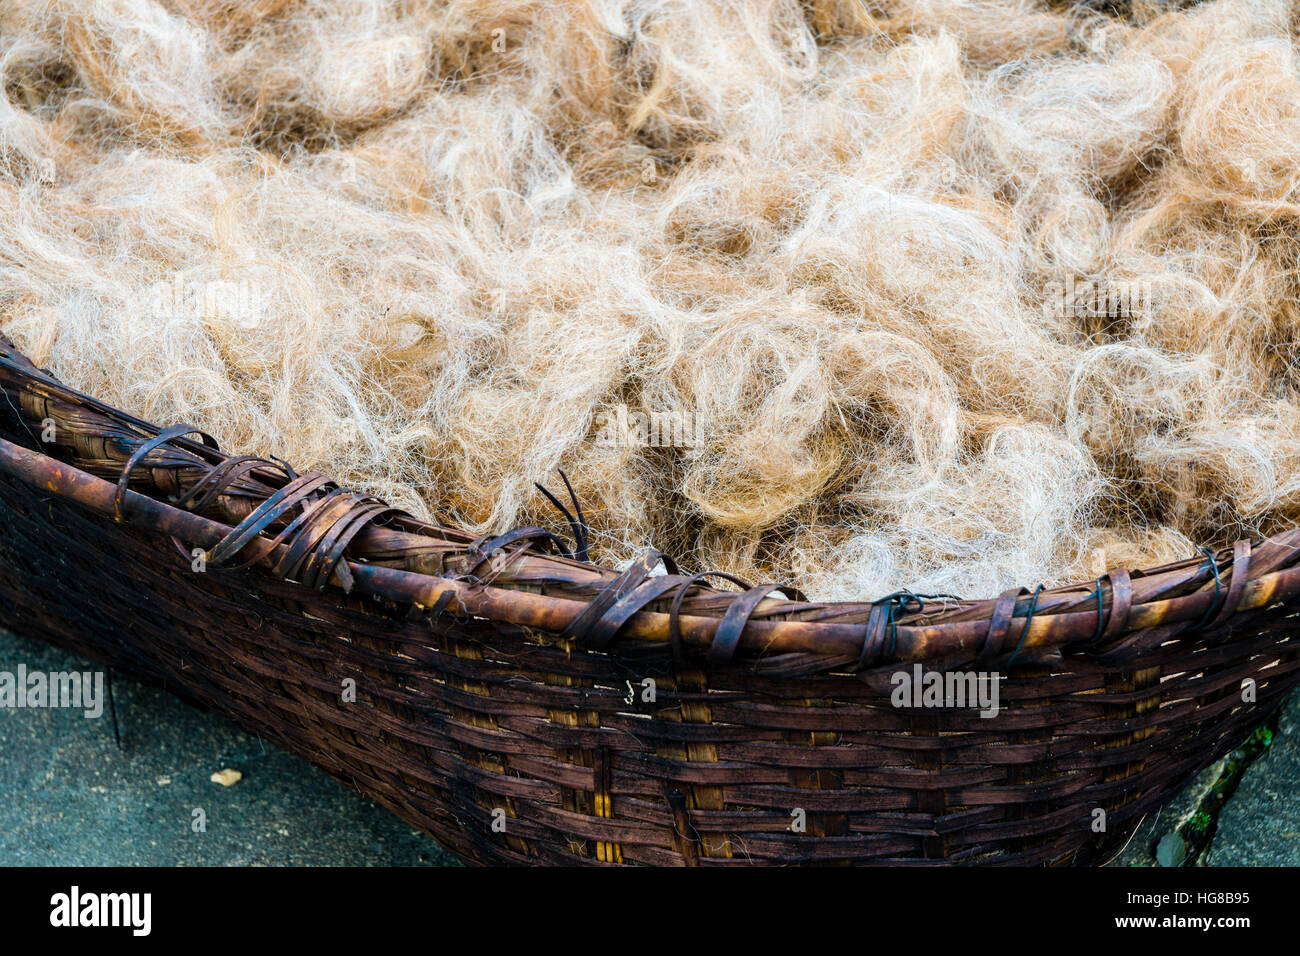 La laine des moutons brutes en panier tressé, au filage, Ghandruk, district de Kaski, Népal Banque D'Images